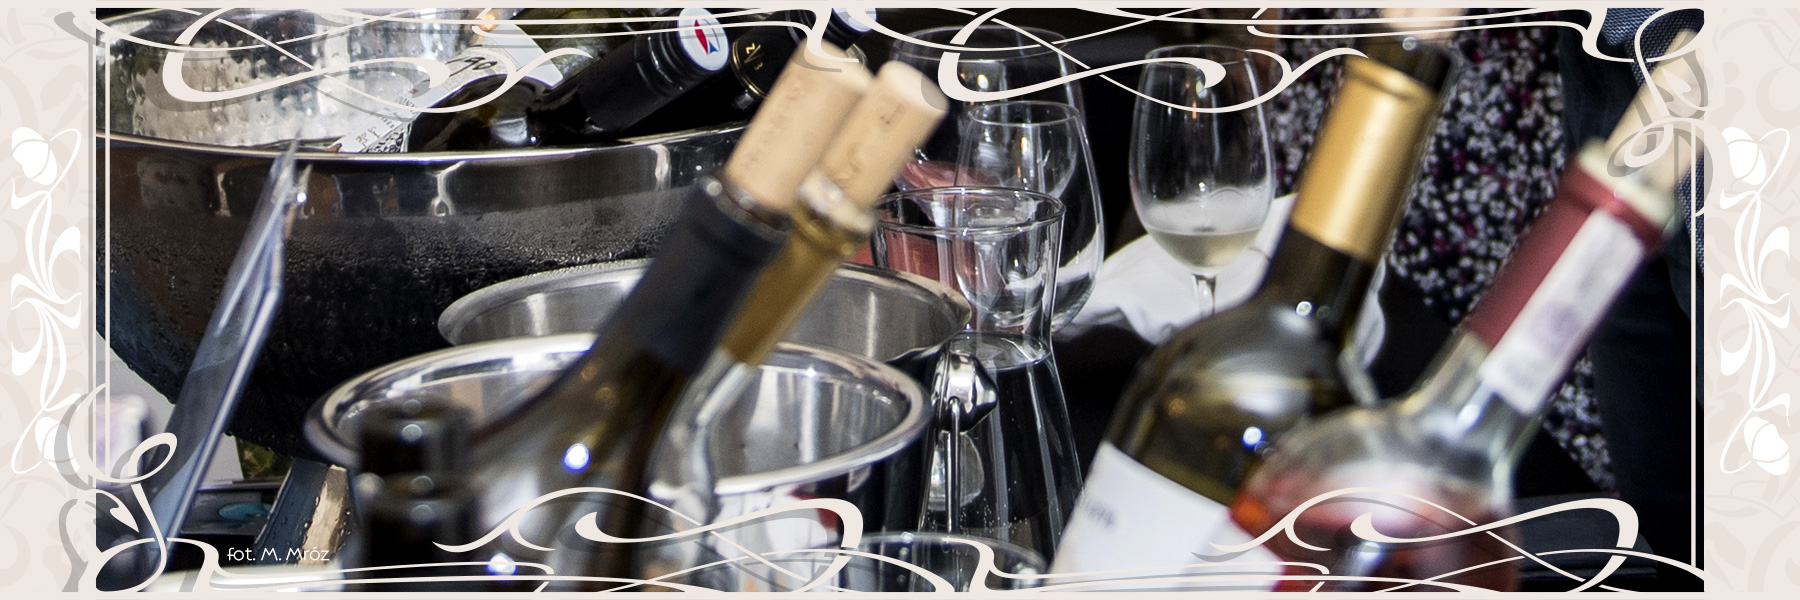 Noc Wina Wieczór toskański “Nie tylko Chianti”  Tematyczna kolacja z degustacją win 